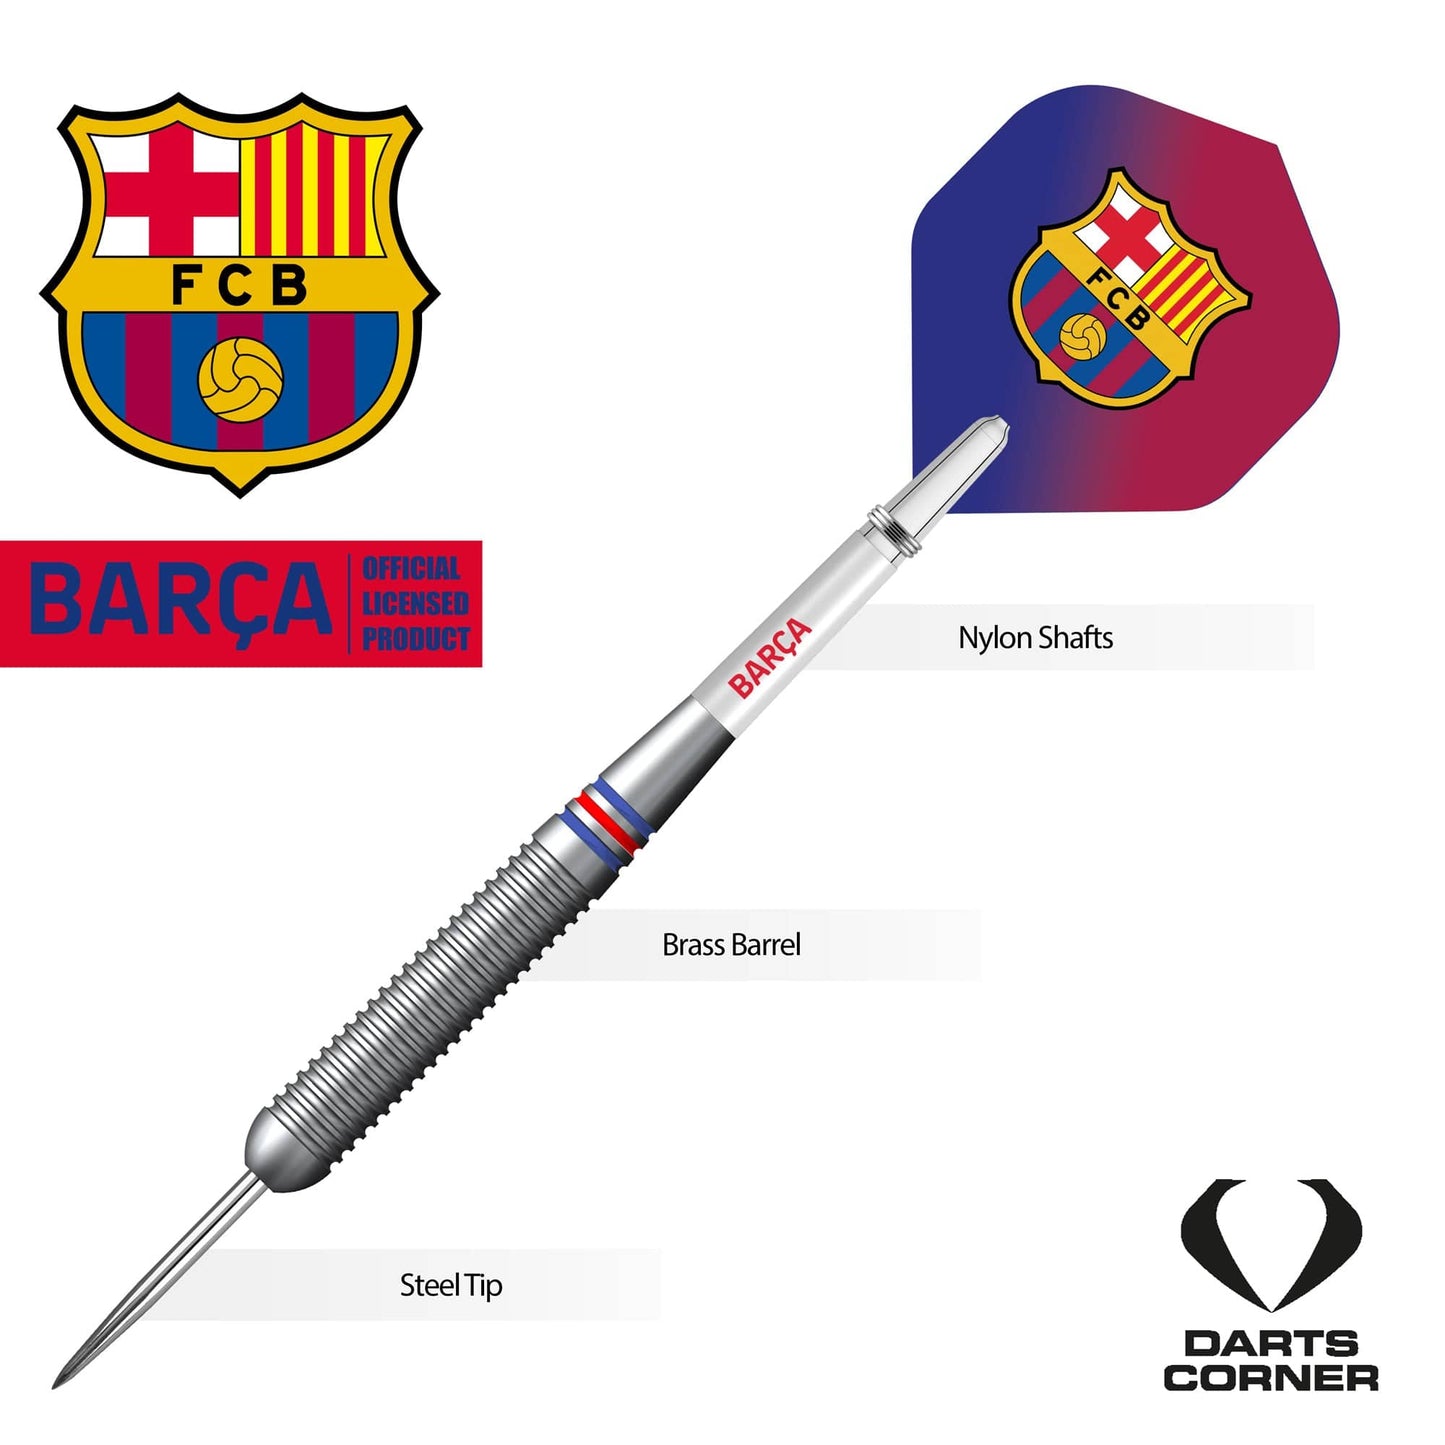 FC Barcelona - Official Licensed BARÇA - Steel Tip Darts - Brass - BARÇA - 22g 22g